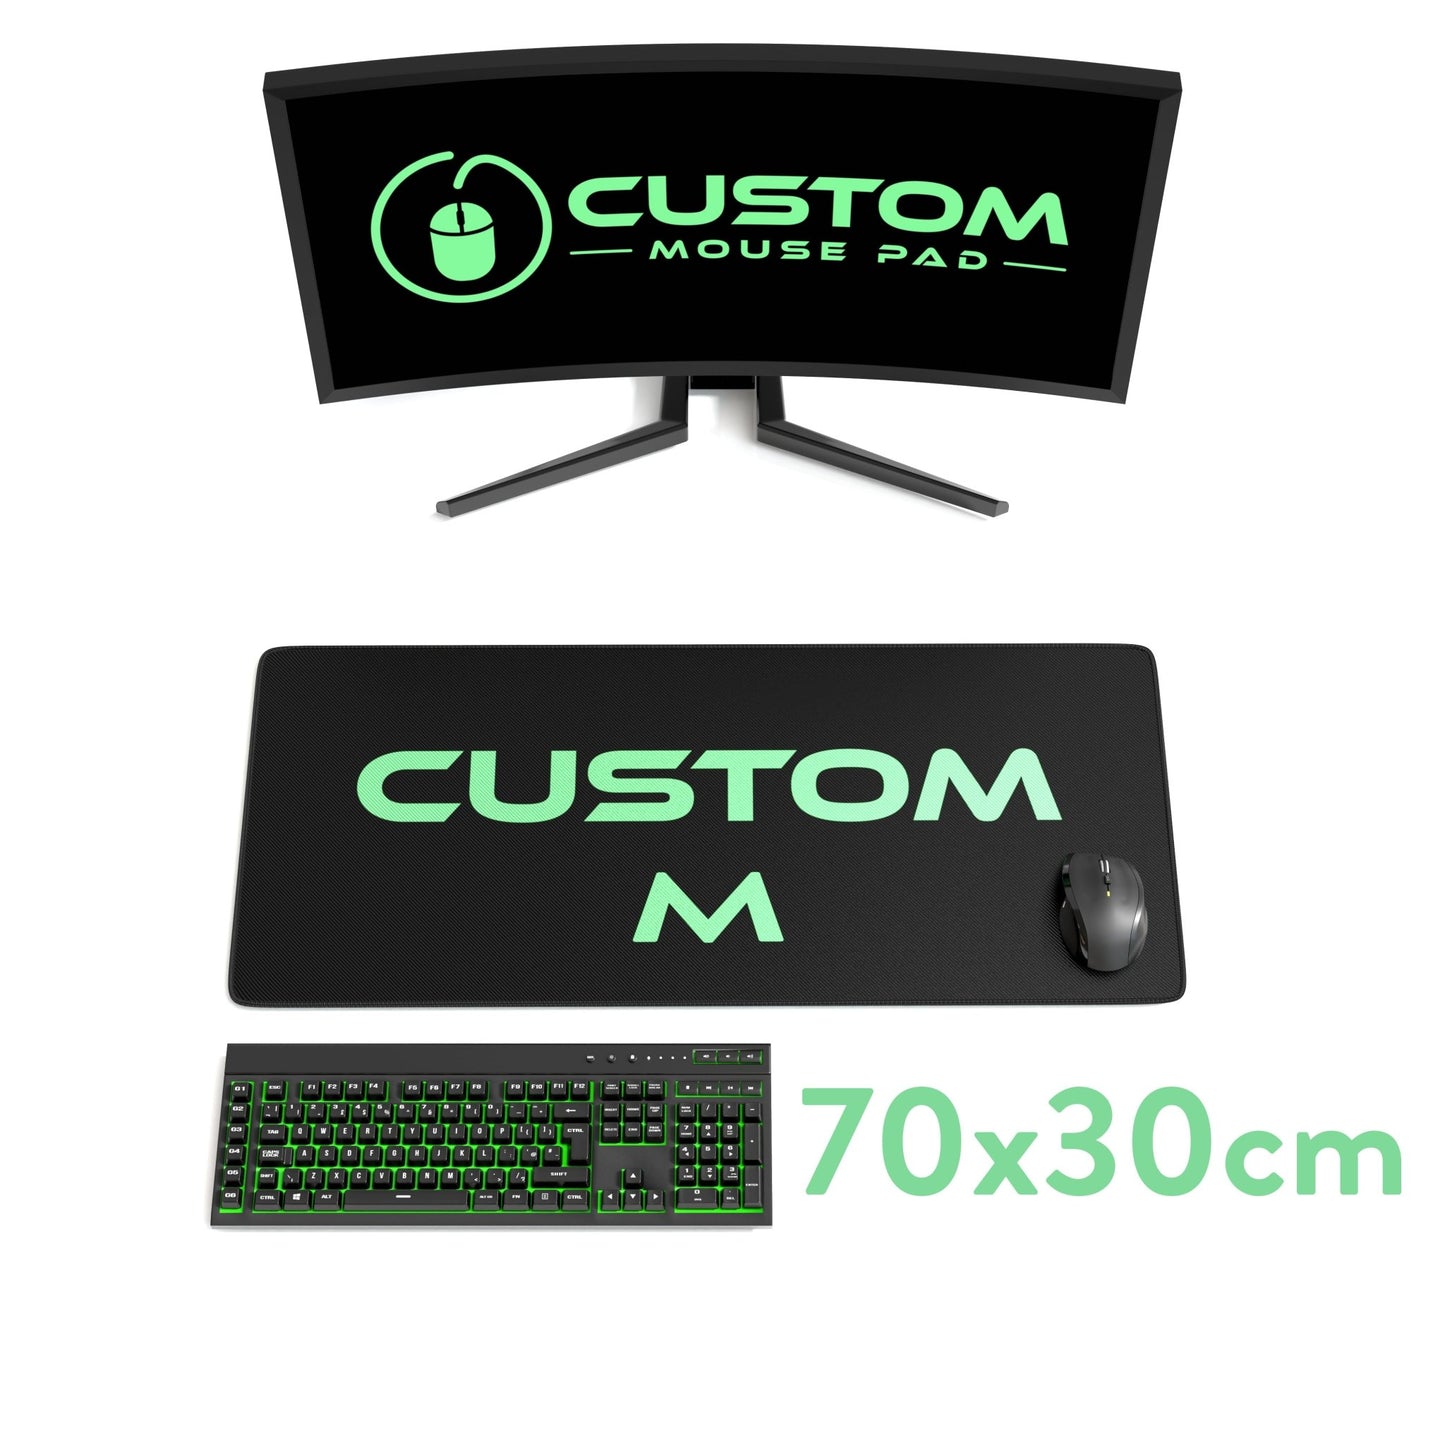 Custom Mouse Pad Medium - CustomMousePad.com.au | #1 Custom Mouse Pad Brand